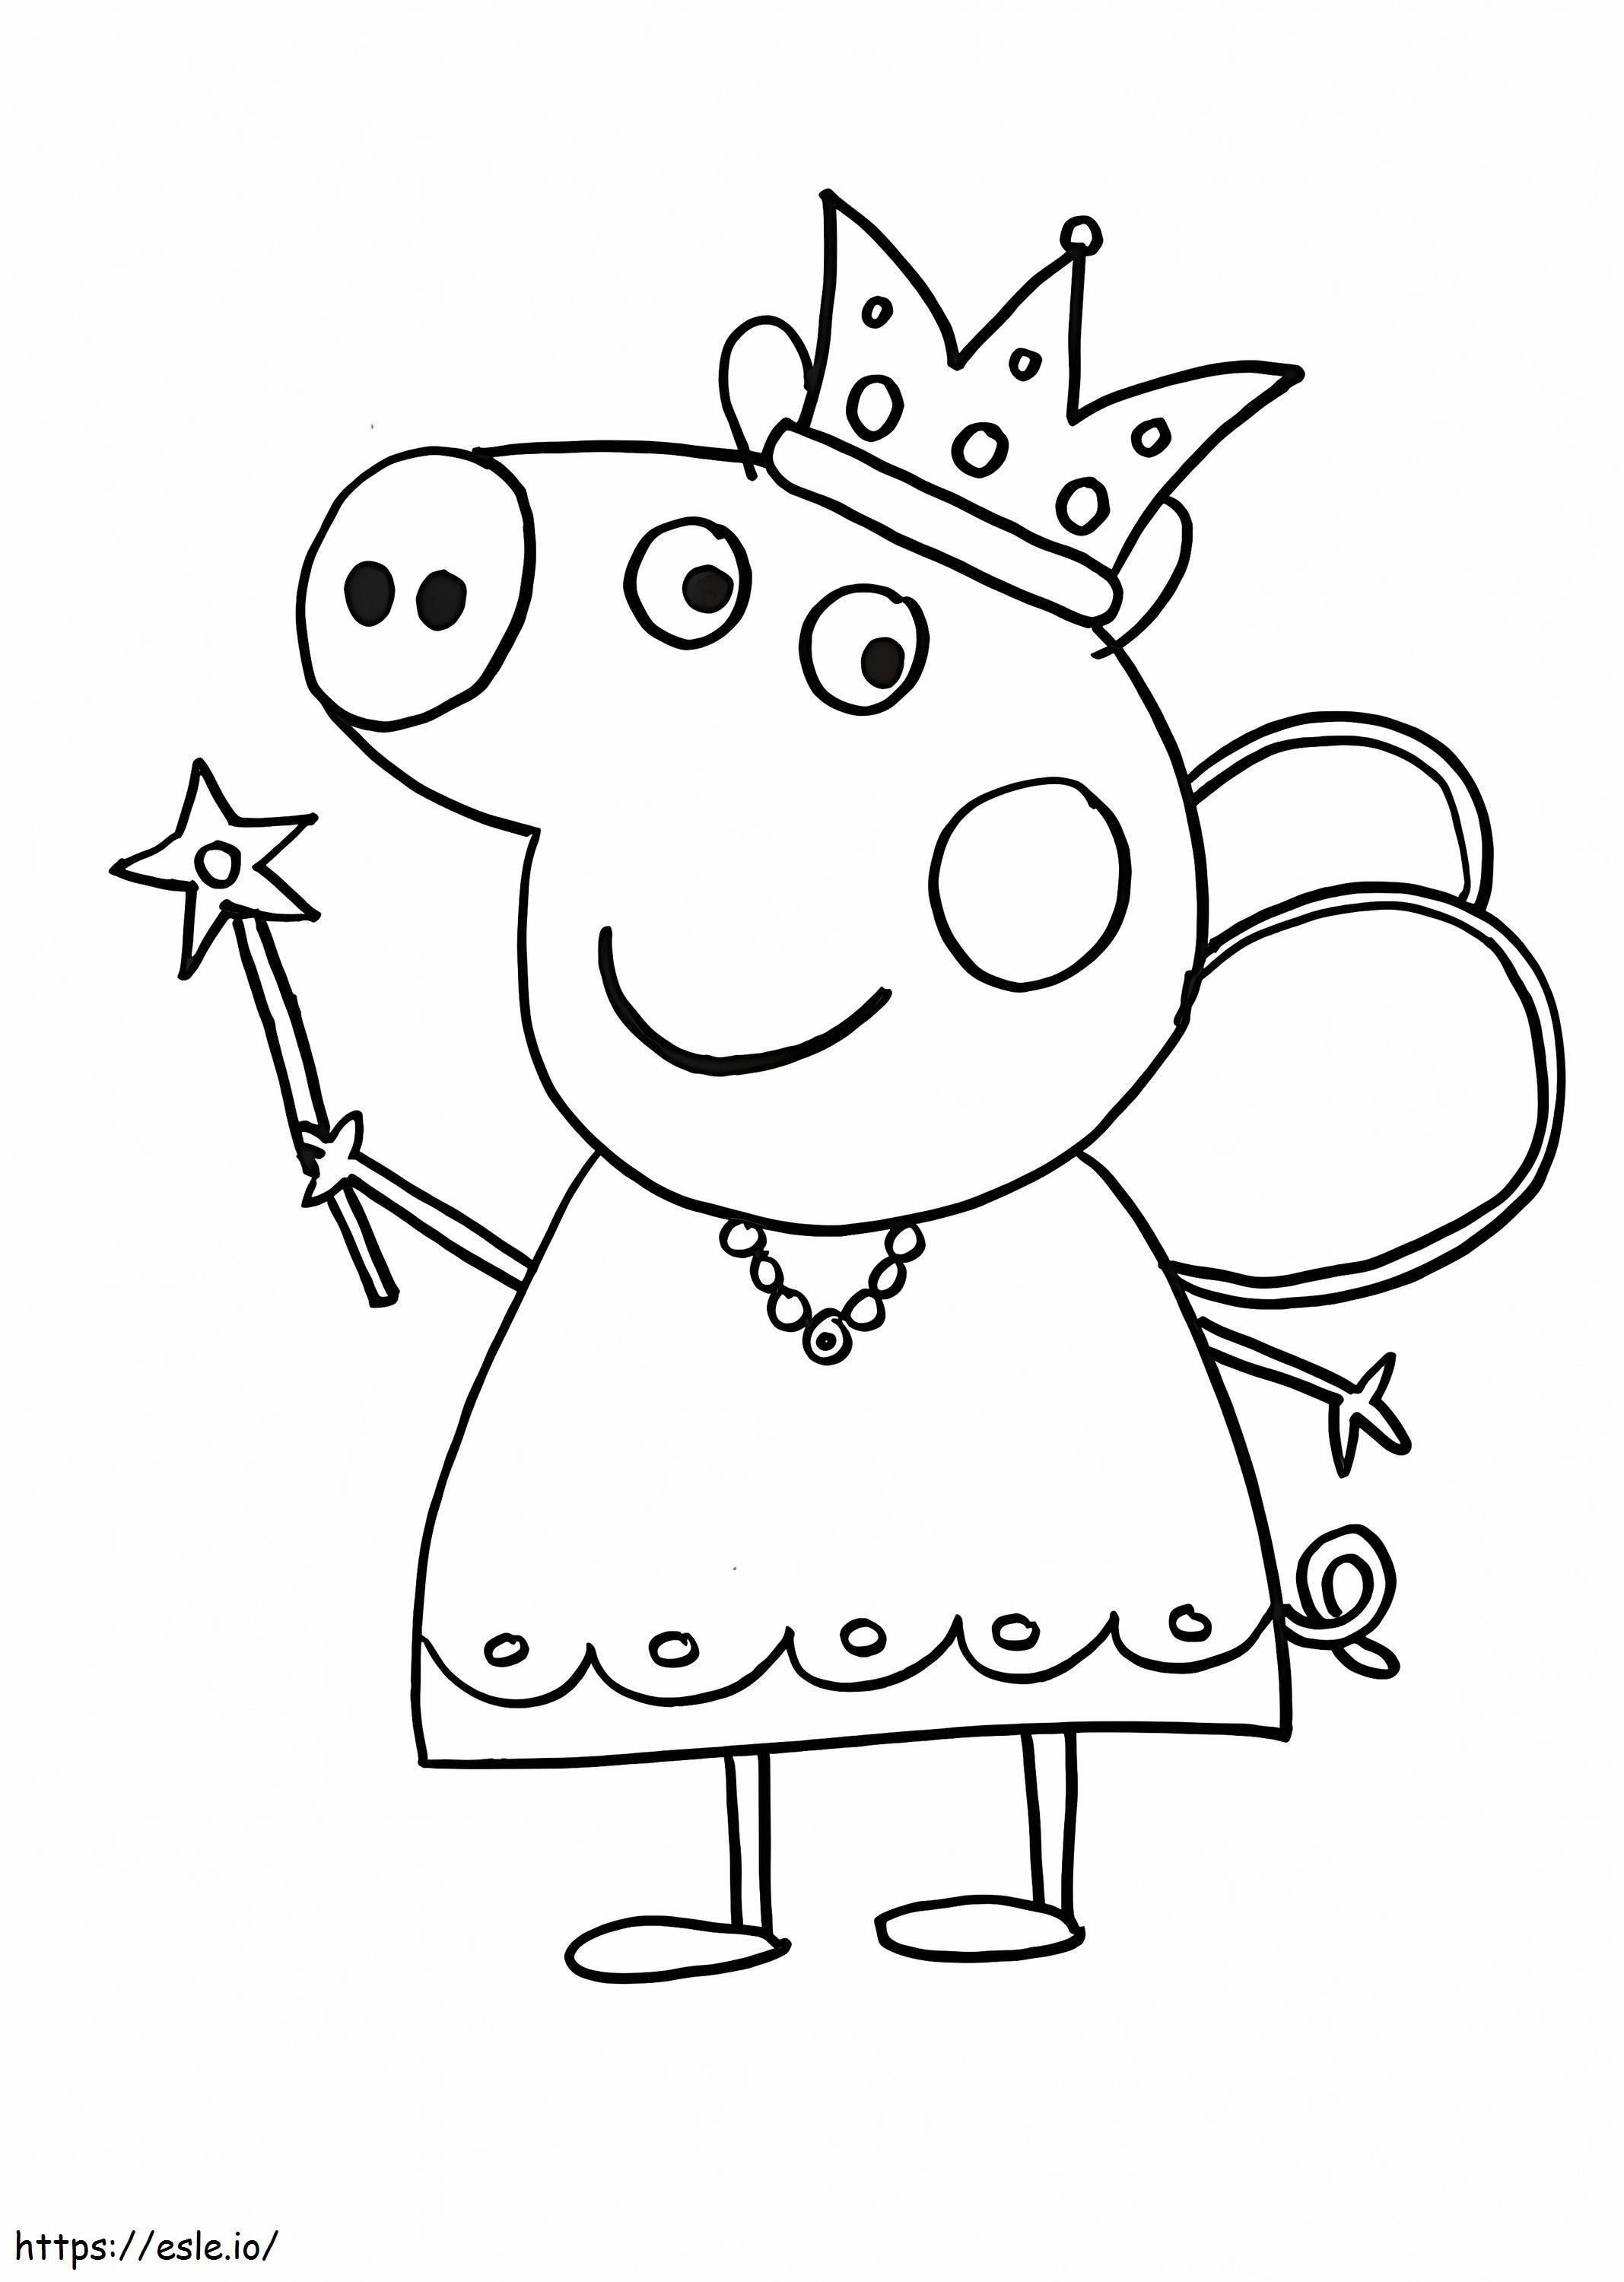 1580802992 Imagens para colorir Peppa Pig para crianças Páginas de livros online grátis Idéias extraordinárias para fotos Paw Patroltable Daniel Tiger Scaled 1 para colorir